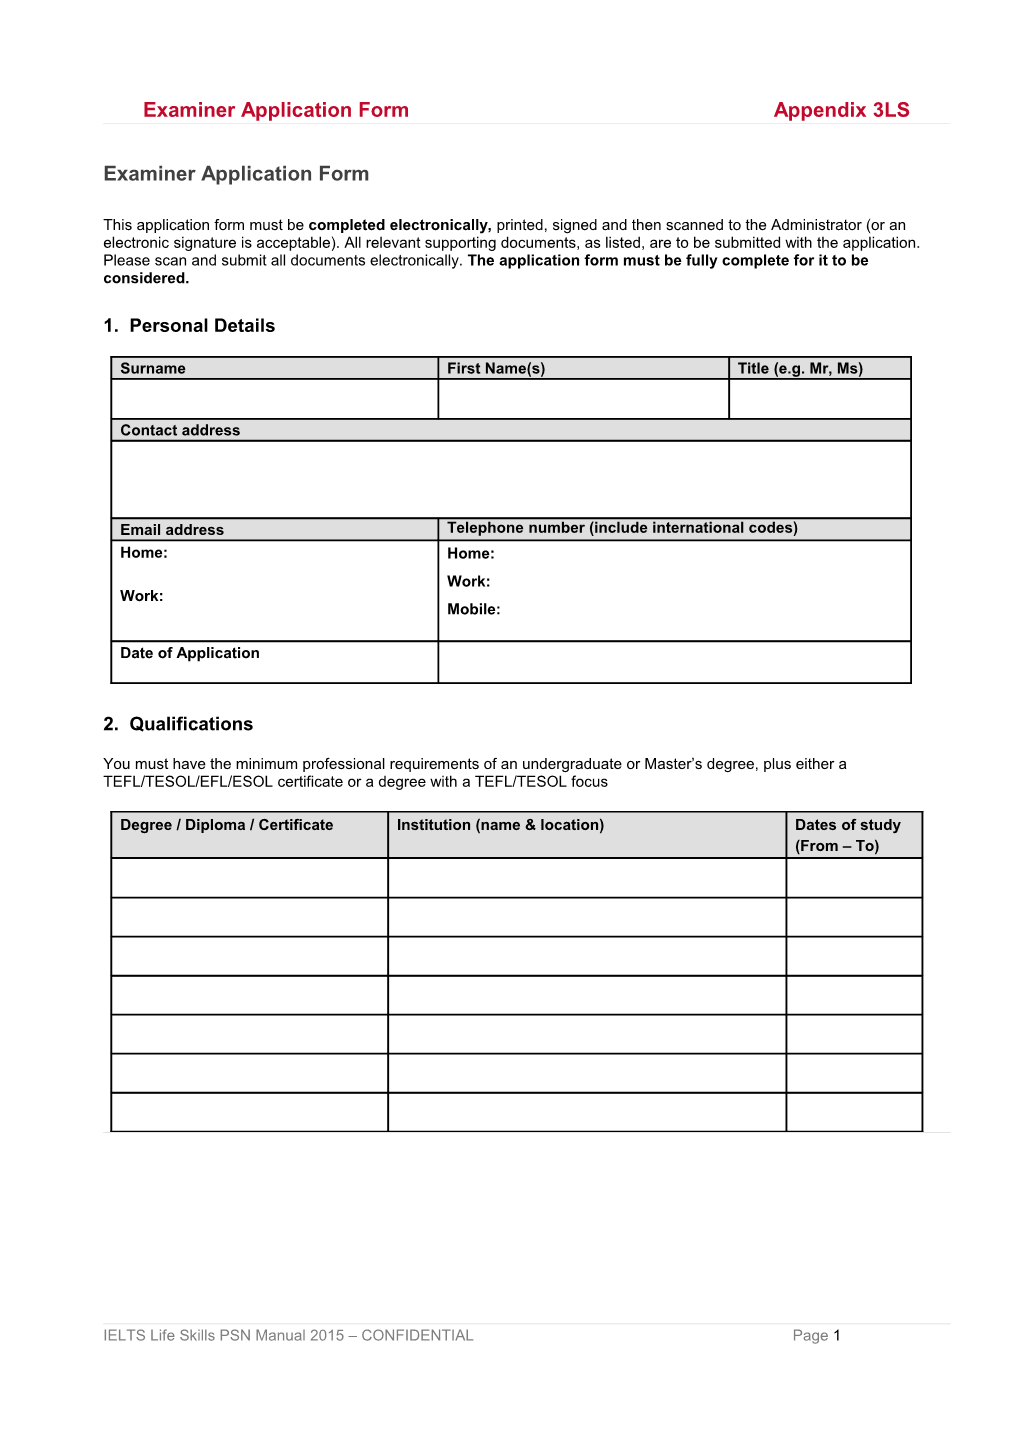 Examiner Application Form Appendix 3LS